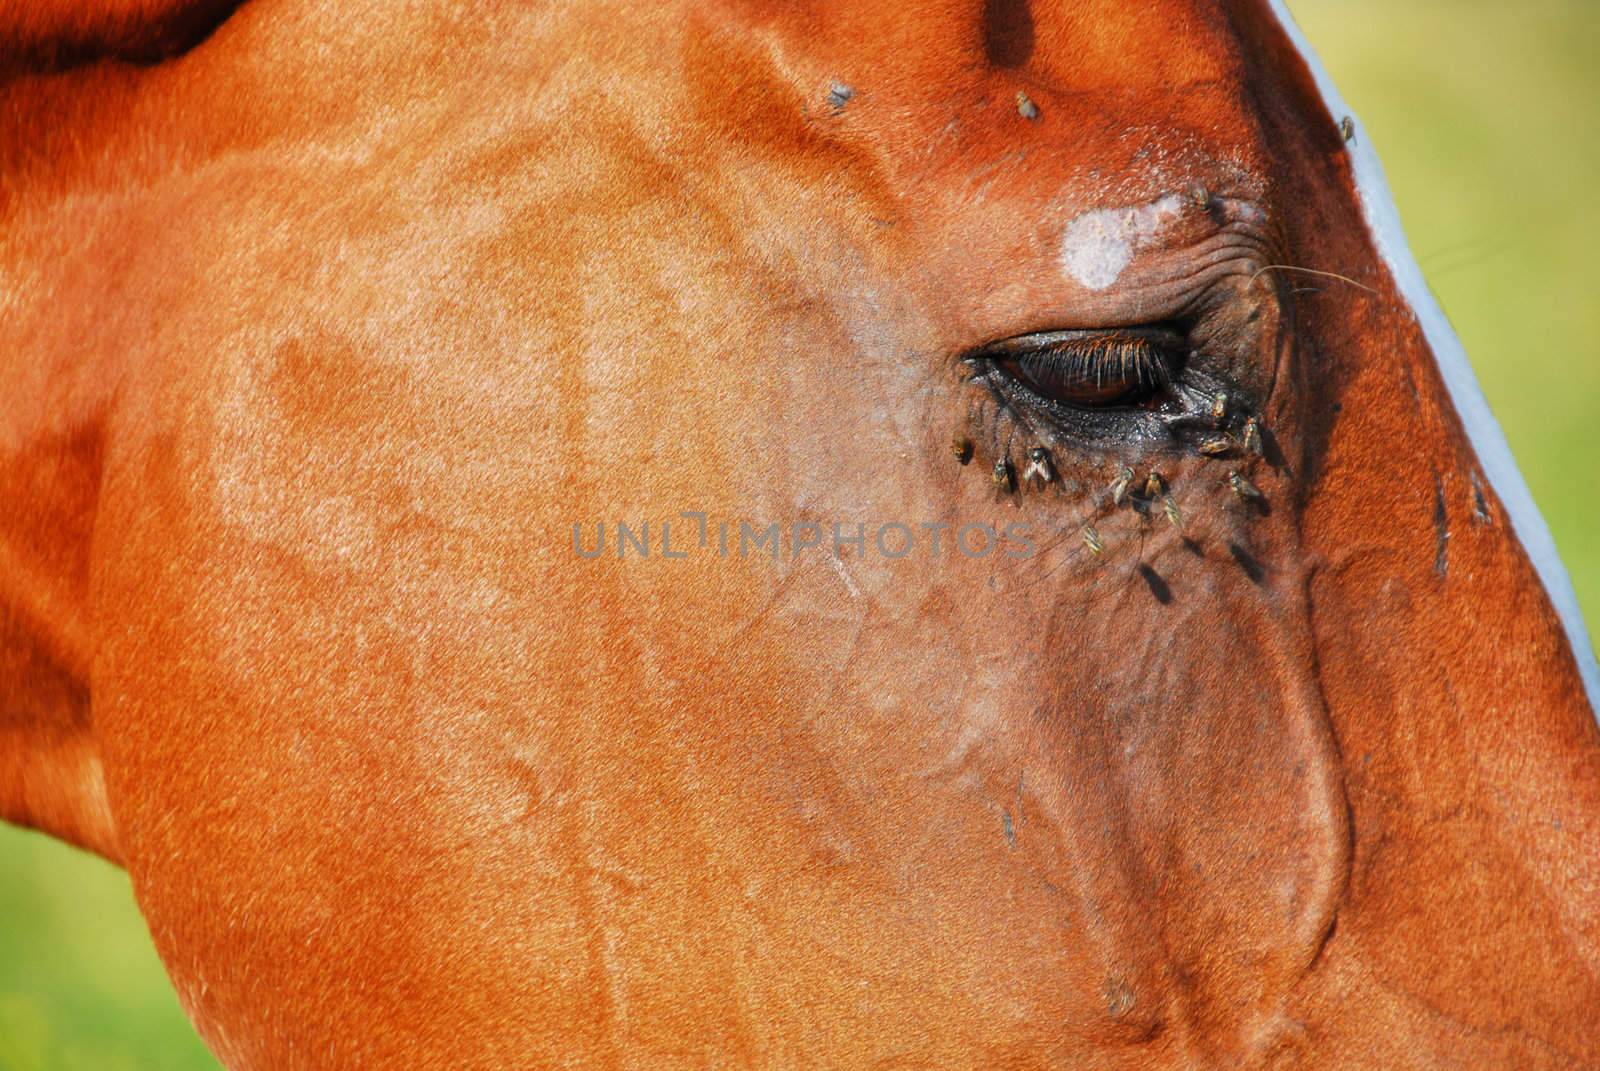 Horse Eye, Dolomites, 2007 by jovannig